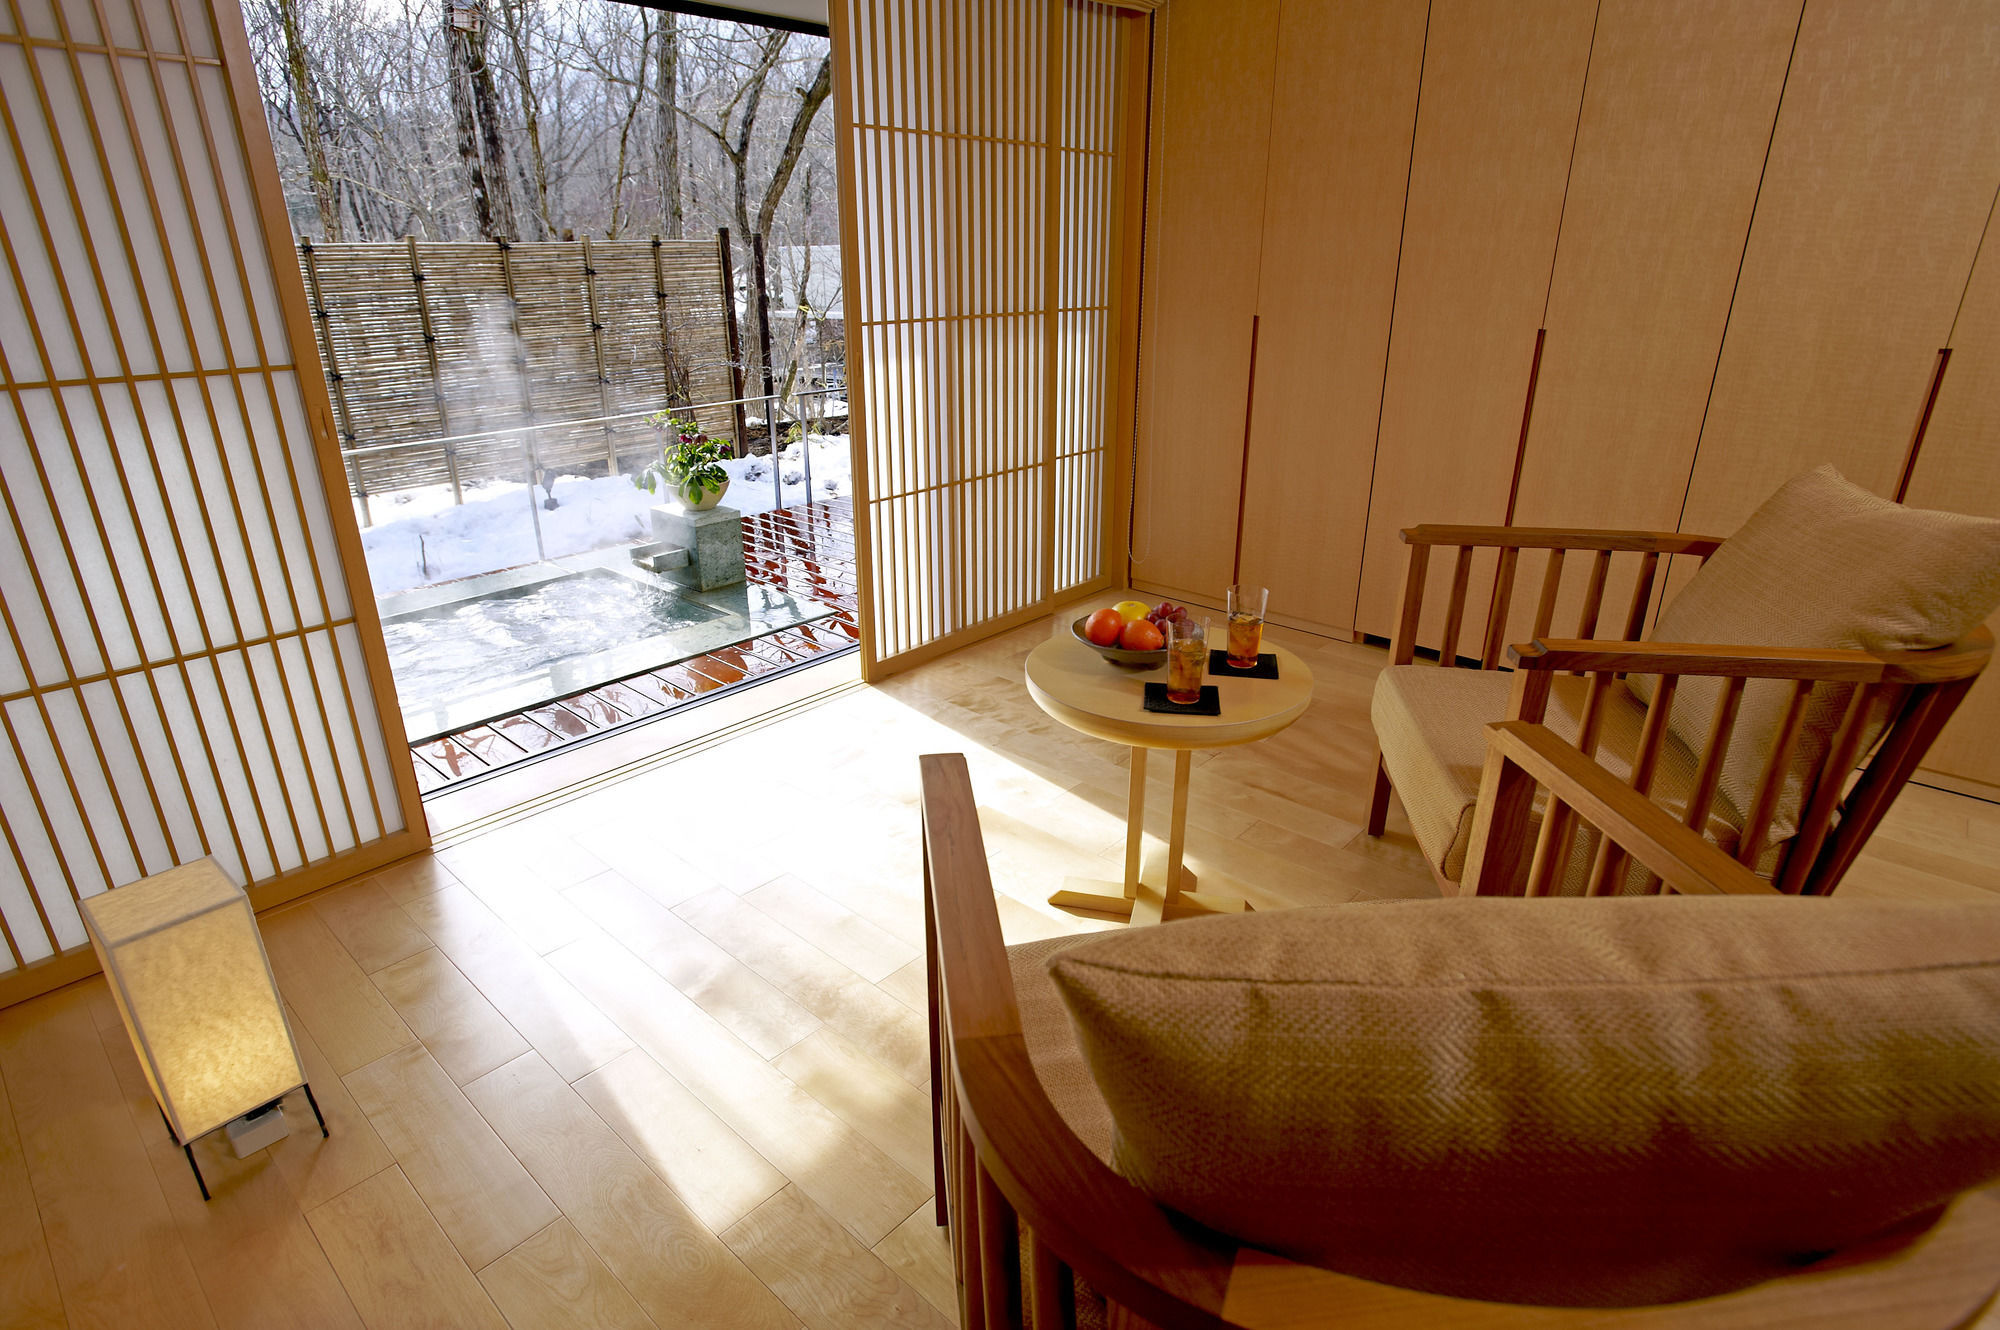 竹泉荘 Chikusenso Onsen Hotel Zao Exterior photo